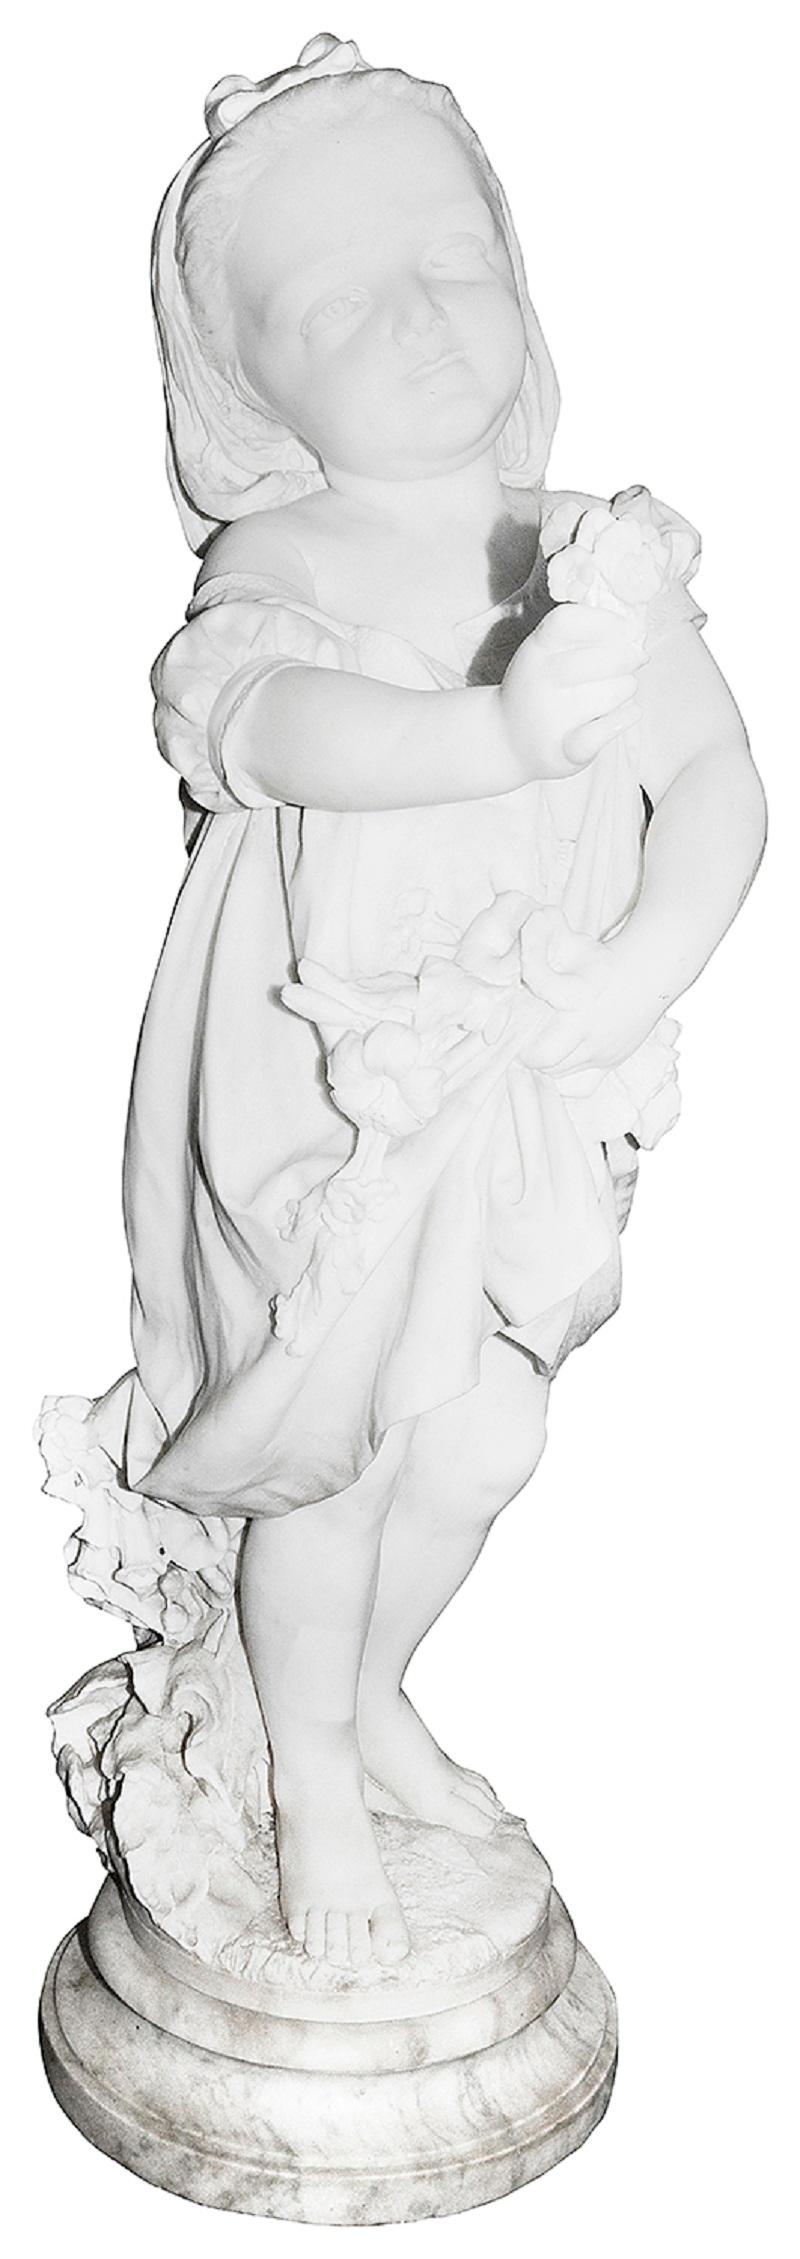 Eine hochwertige Carrera-Marmorstatue aus dem 19. Jahrhundert mit einem jungen Mädchen, das eine Blume hält, ein hübsches Kleid trägt und lächelt.
Signiert auf dem Sockel; P. DELLA VEDOVA 1870
PIETRO DELLA VEDOVA (ITALIENISCH, 1831-1899):

Charge 78